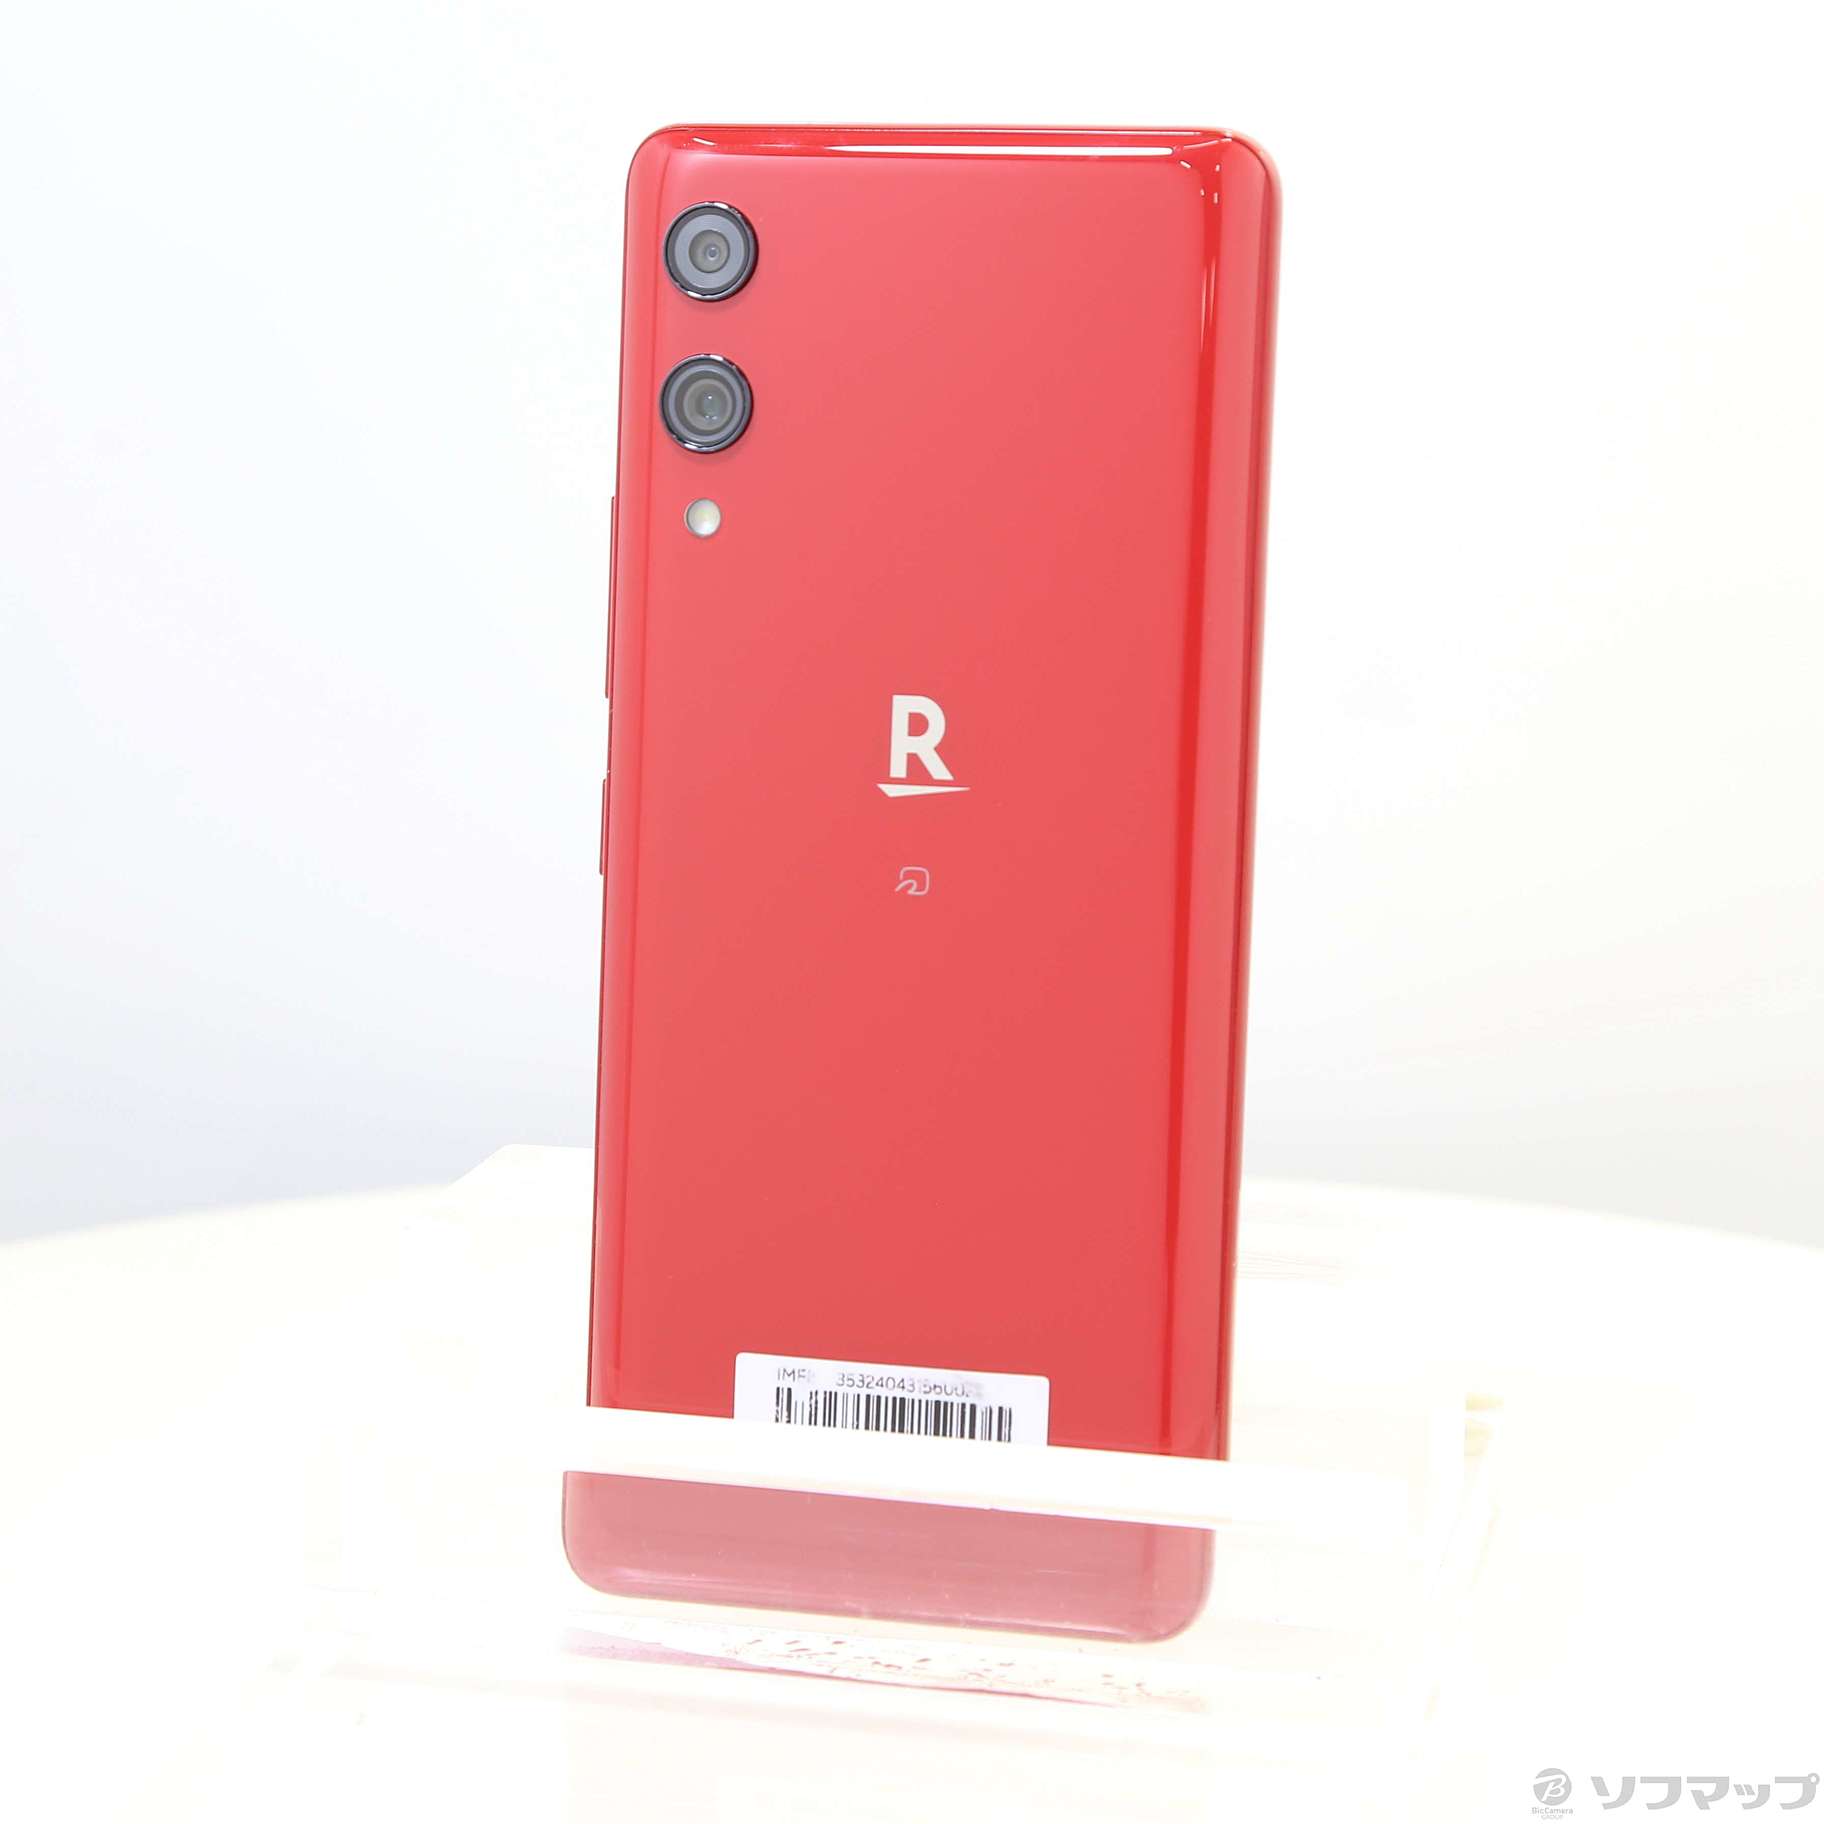 Rakuten Hand P710 Crimson Red SIMフリー